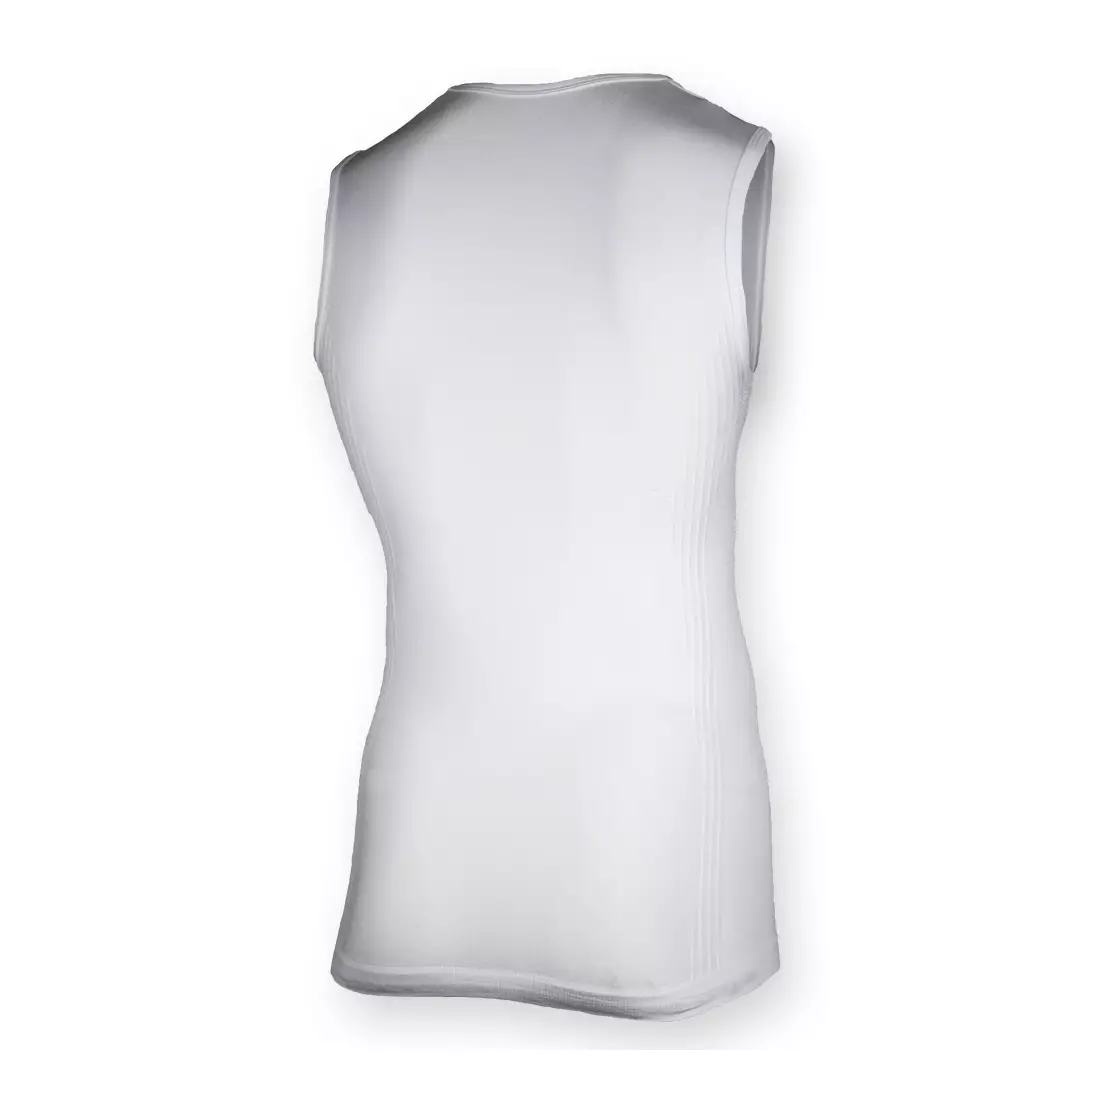 ROGELLI - compression underwear - sleeveless shirt 070.011